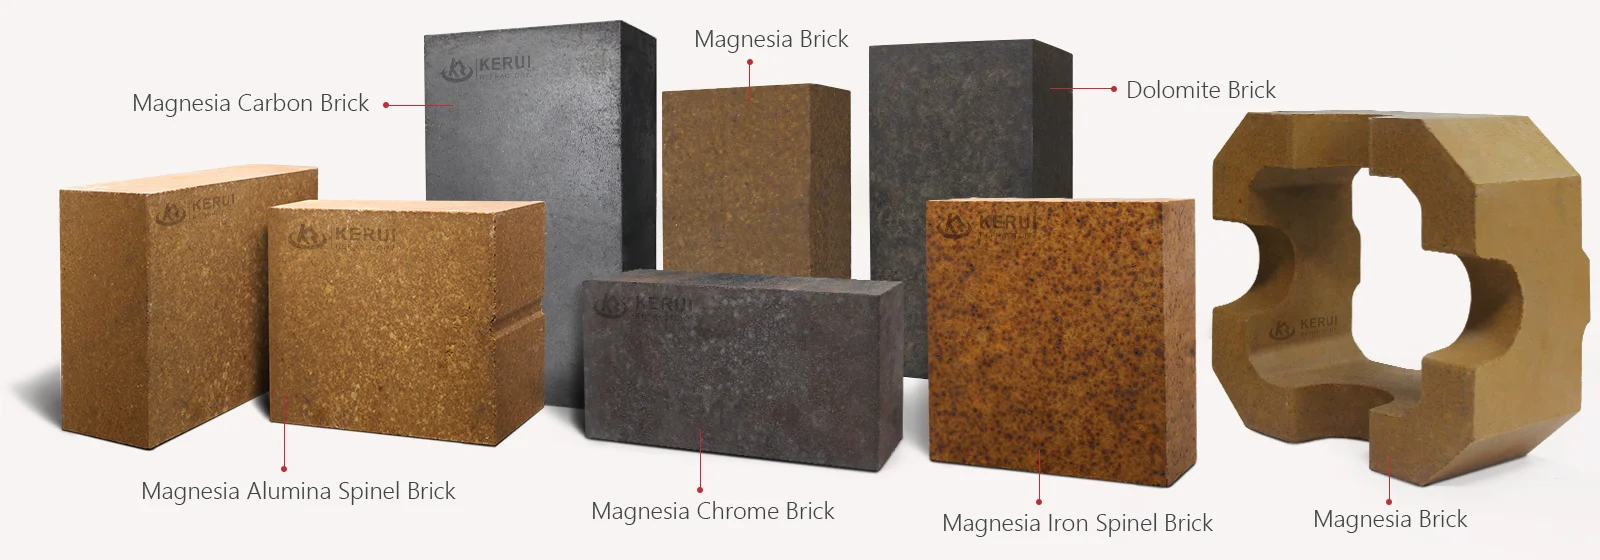 Different Types of Magnesia Bricks - Kerui